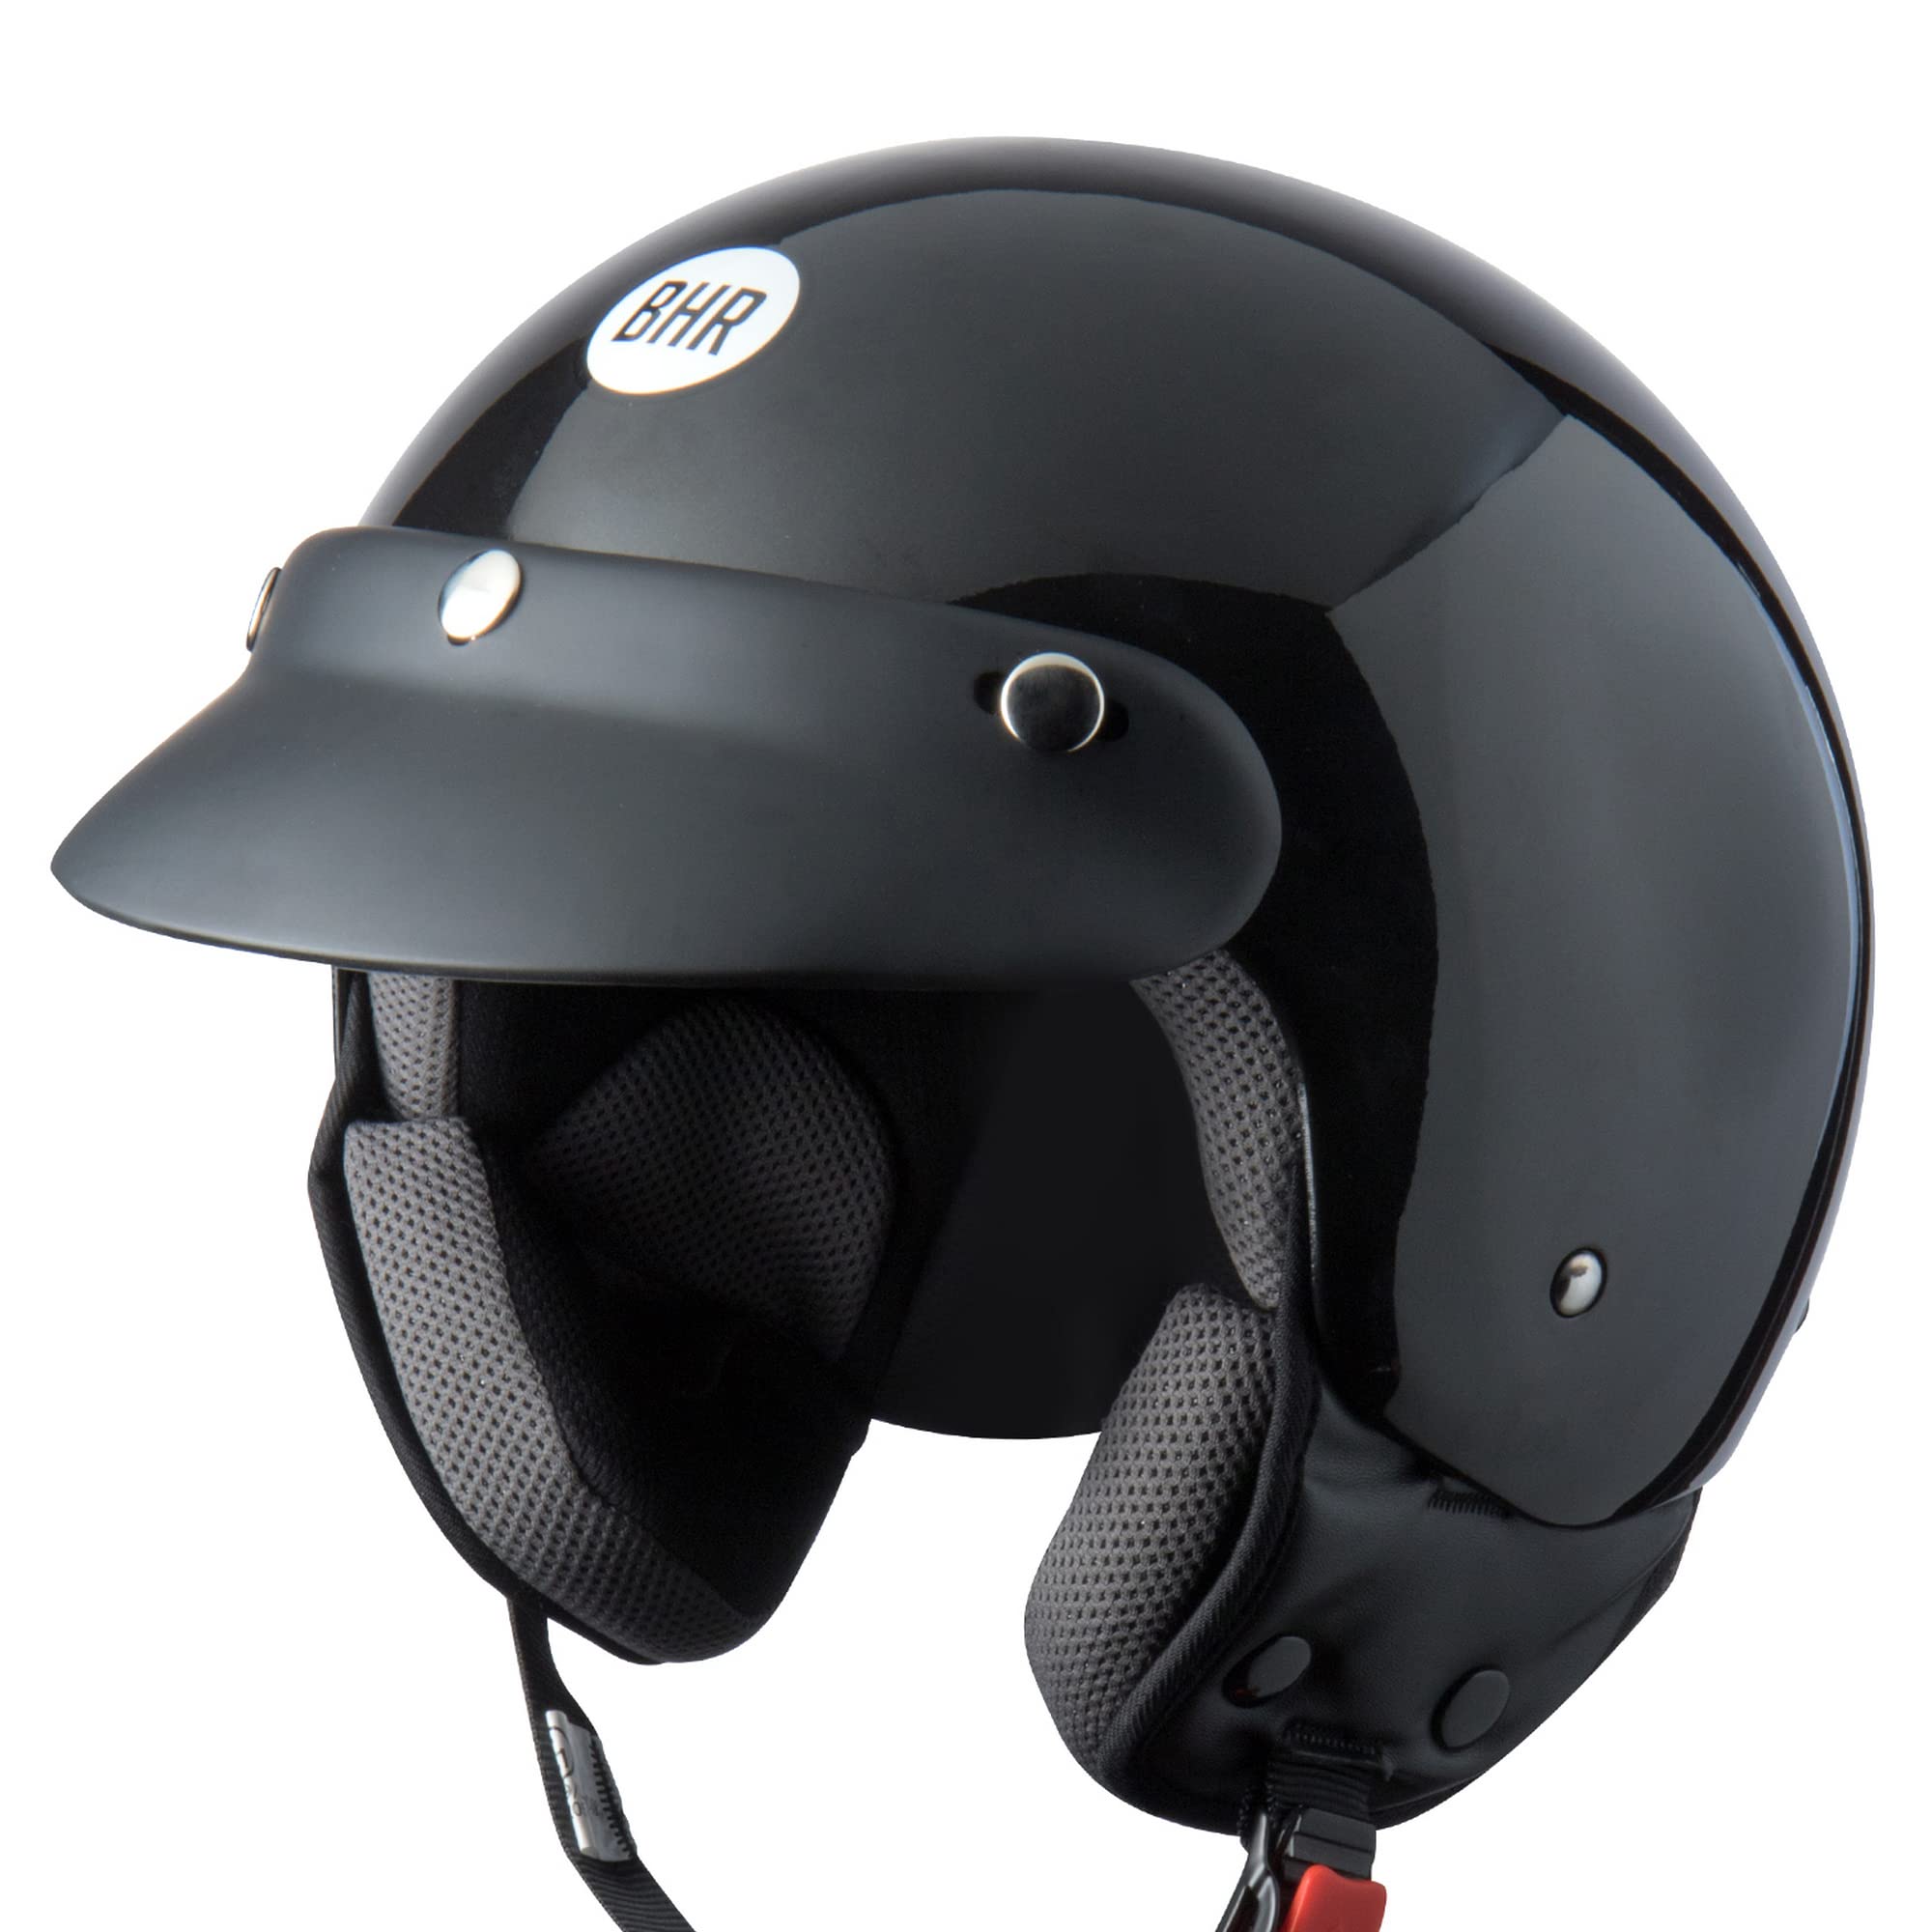 BHR Demi-Jet Helm 803 Simply, Praktischer Rollerhelm mit ECE-Zulassung, Motorrad-Jet-Helm mit abnehmbarem Gesichtspolster, SCHWARZ METALLIC, XS